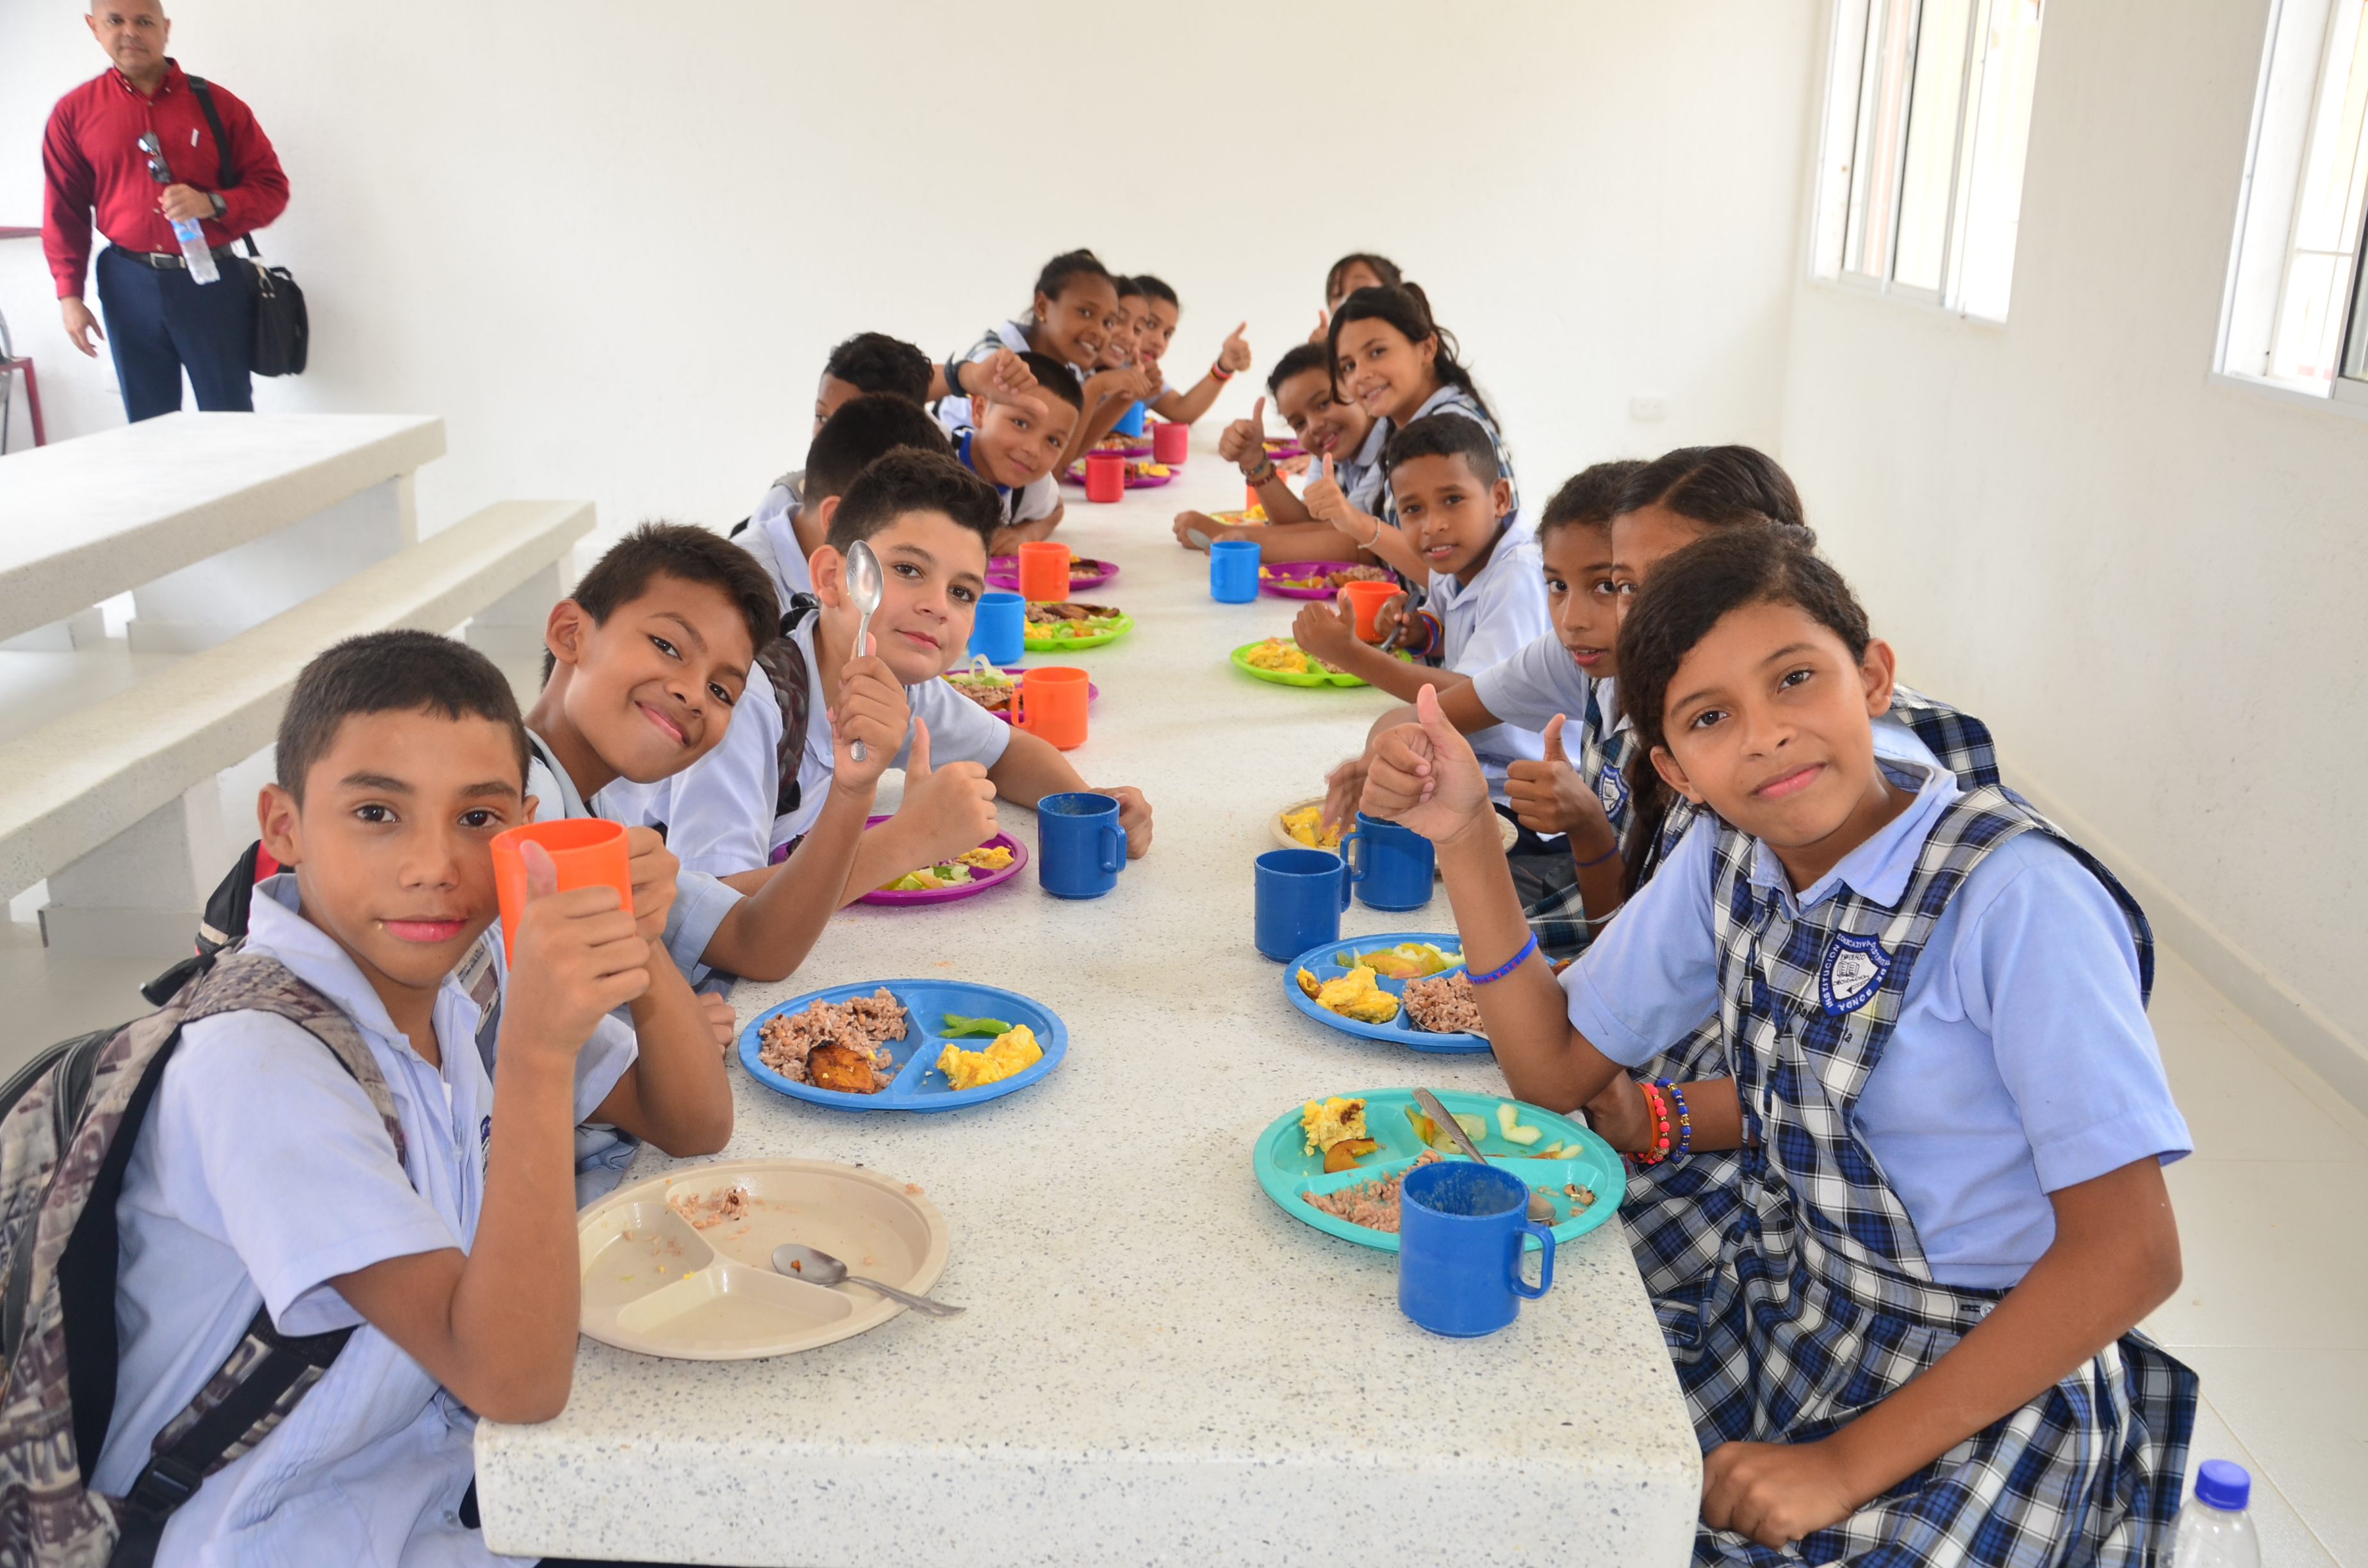 Programa de Alimentación Escolar -PAE-, se ejecuta con total transparencia y calidad en escuelas y colegios públicos de Santa Marta